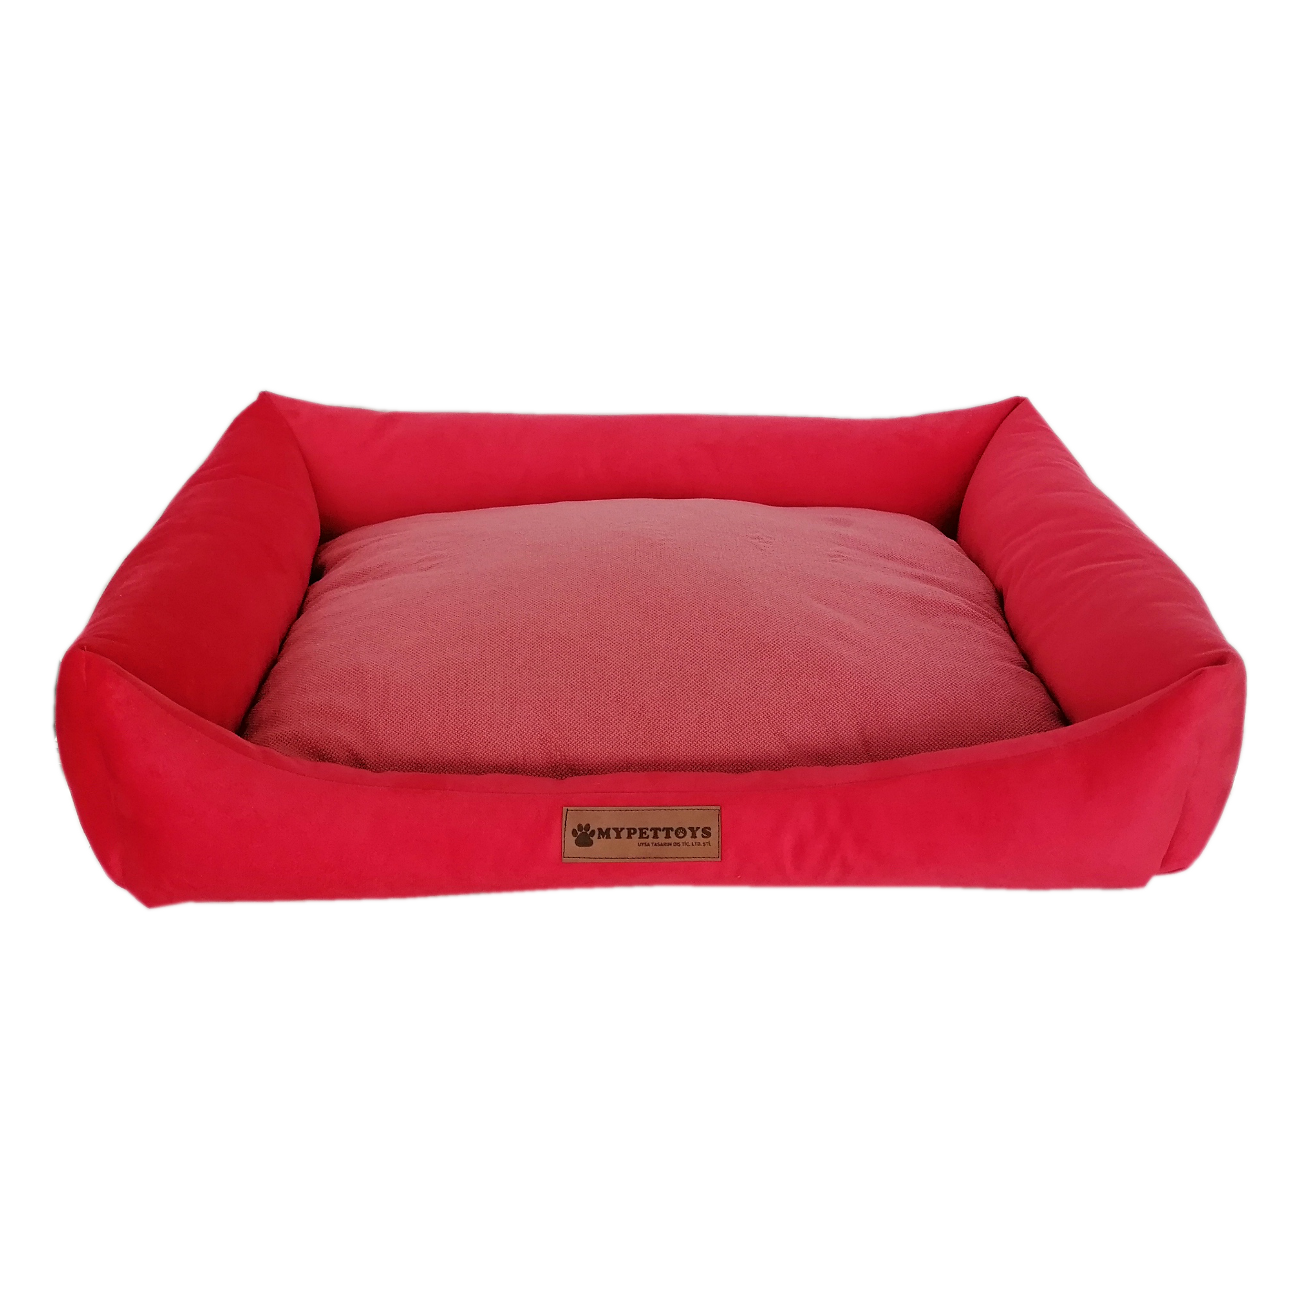 Tay Tüyü Yumuşak Köpek Yatağı X Large Kırmızı 80*100 cm